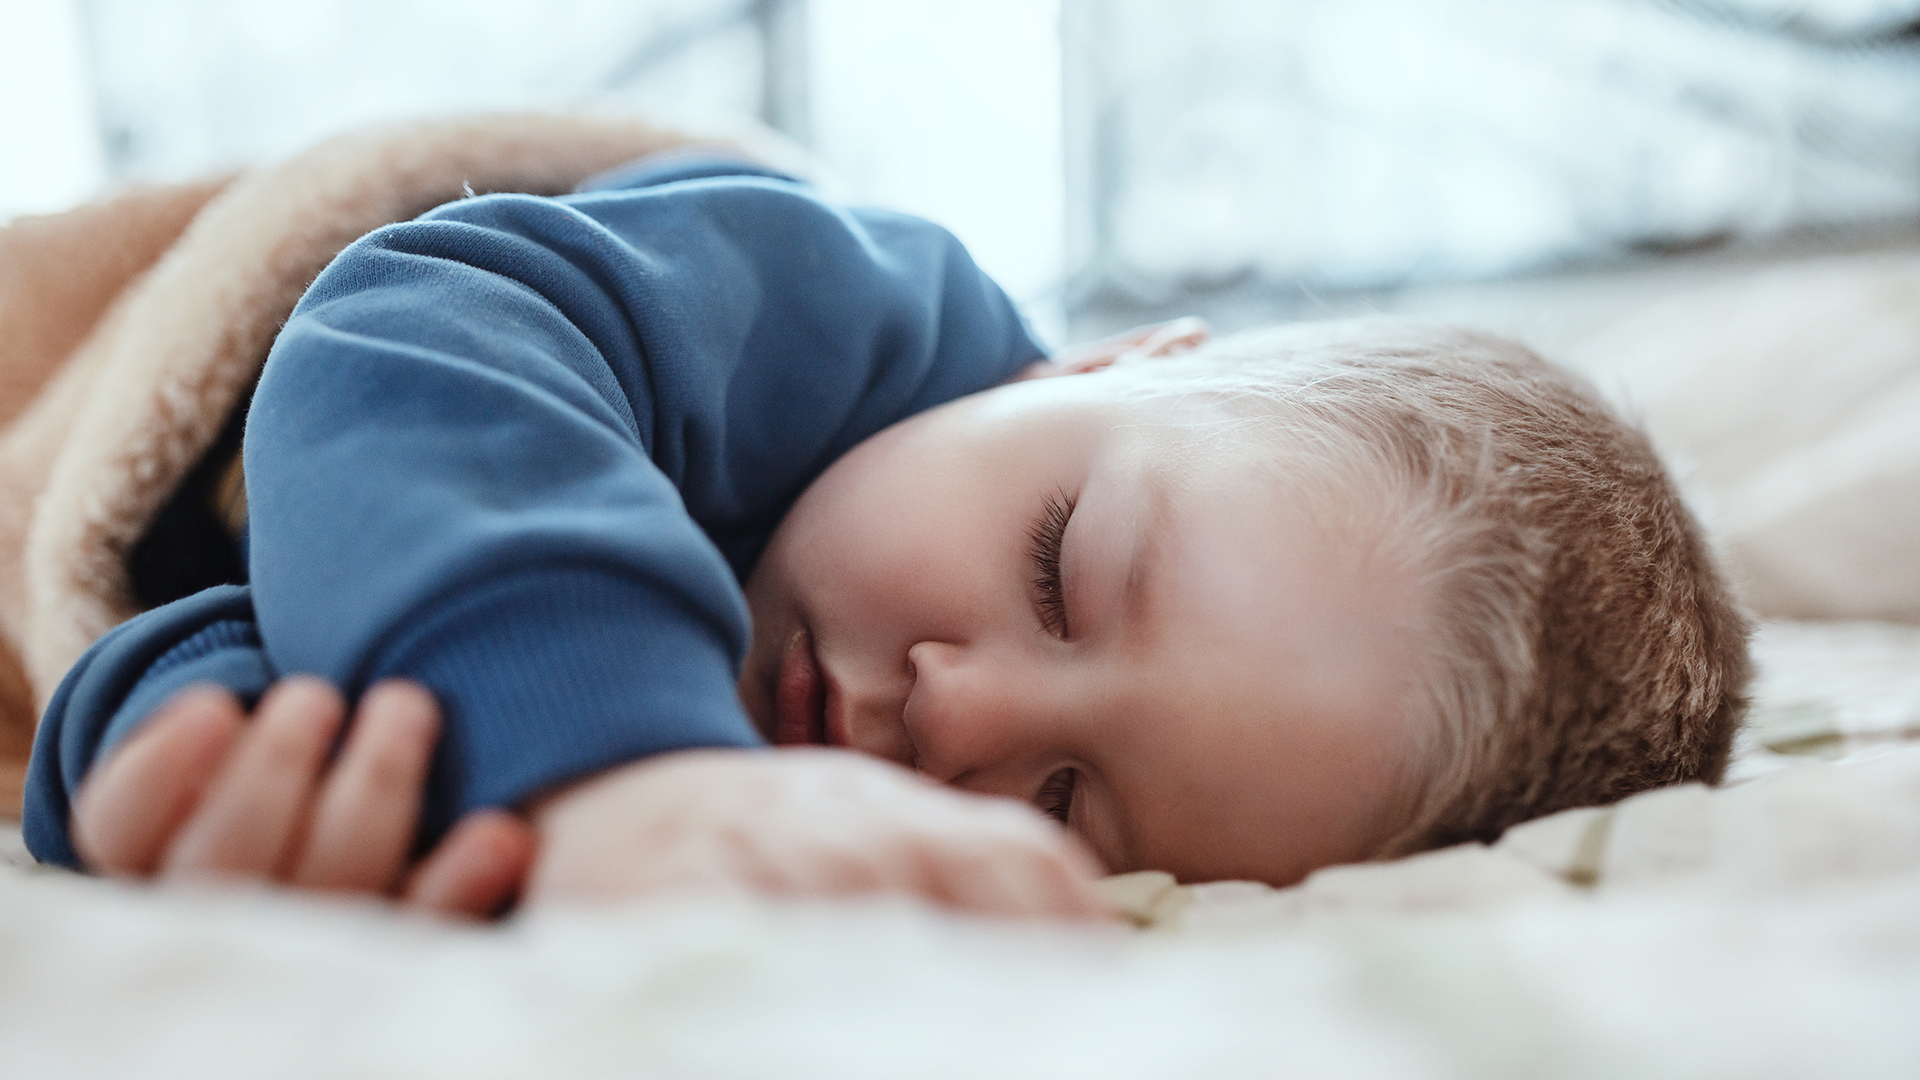 La siesta es habitual durante los primeros años de vida, pero es menos frecuente a medida que aumenta la edad; luego vuelve a instalarse en la edad adulta (Getty)